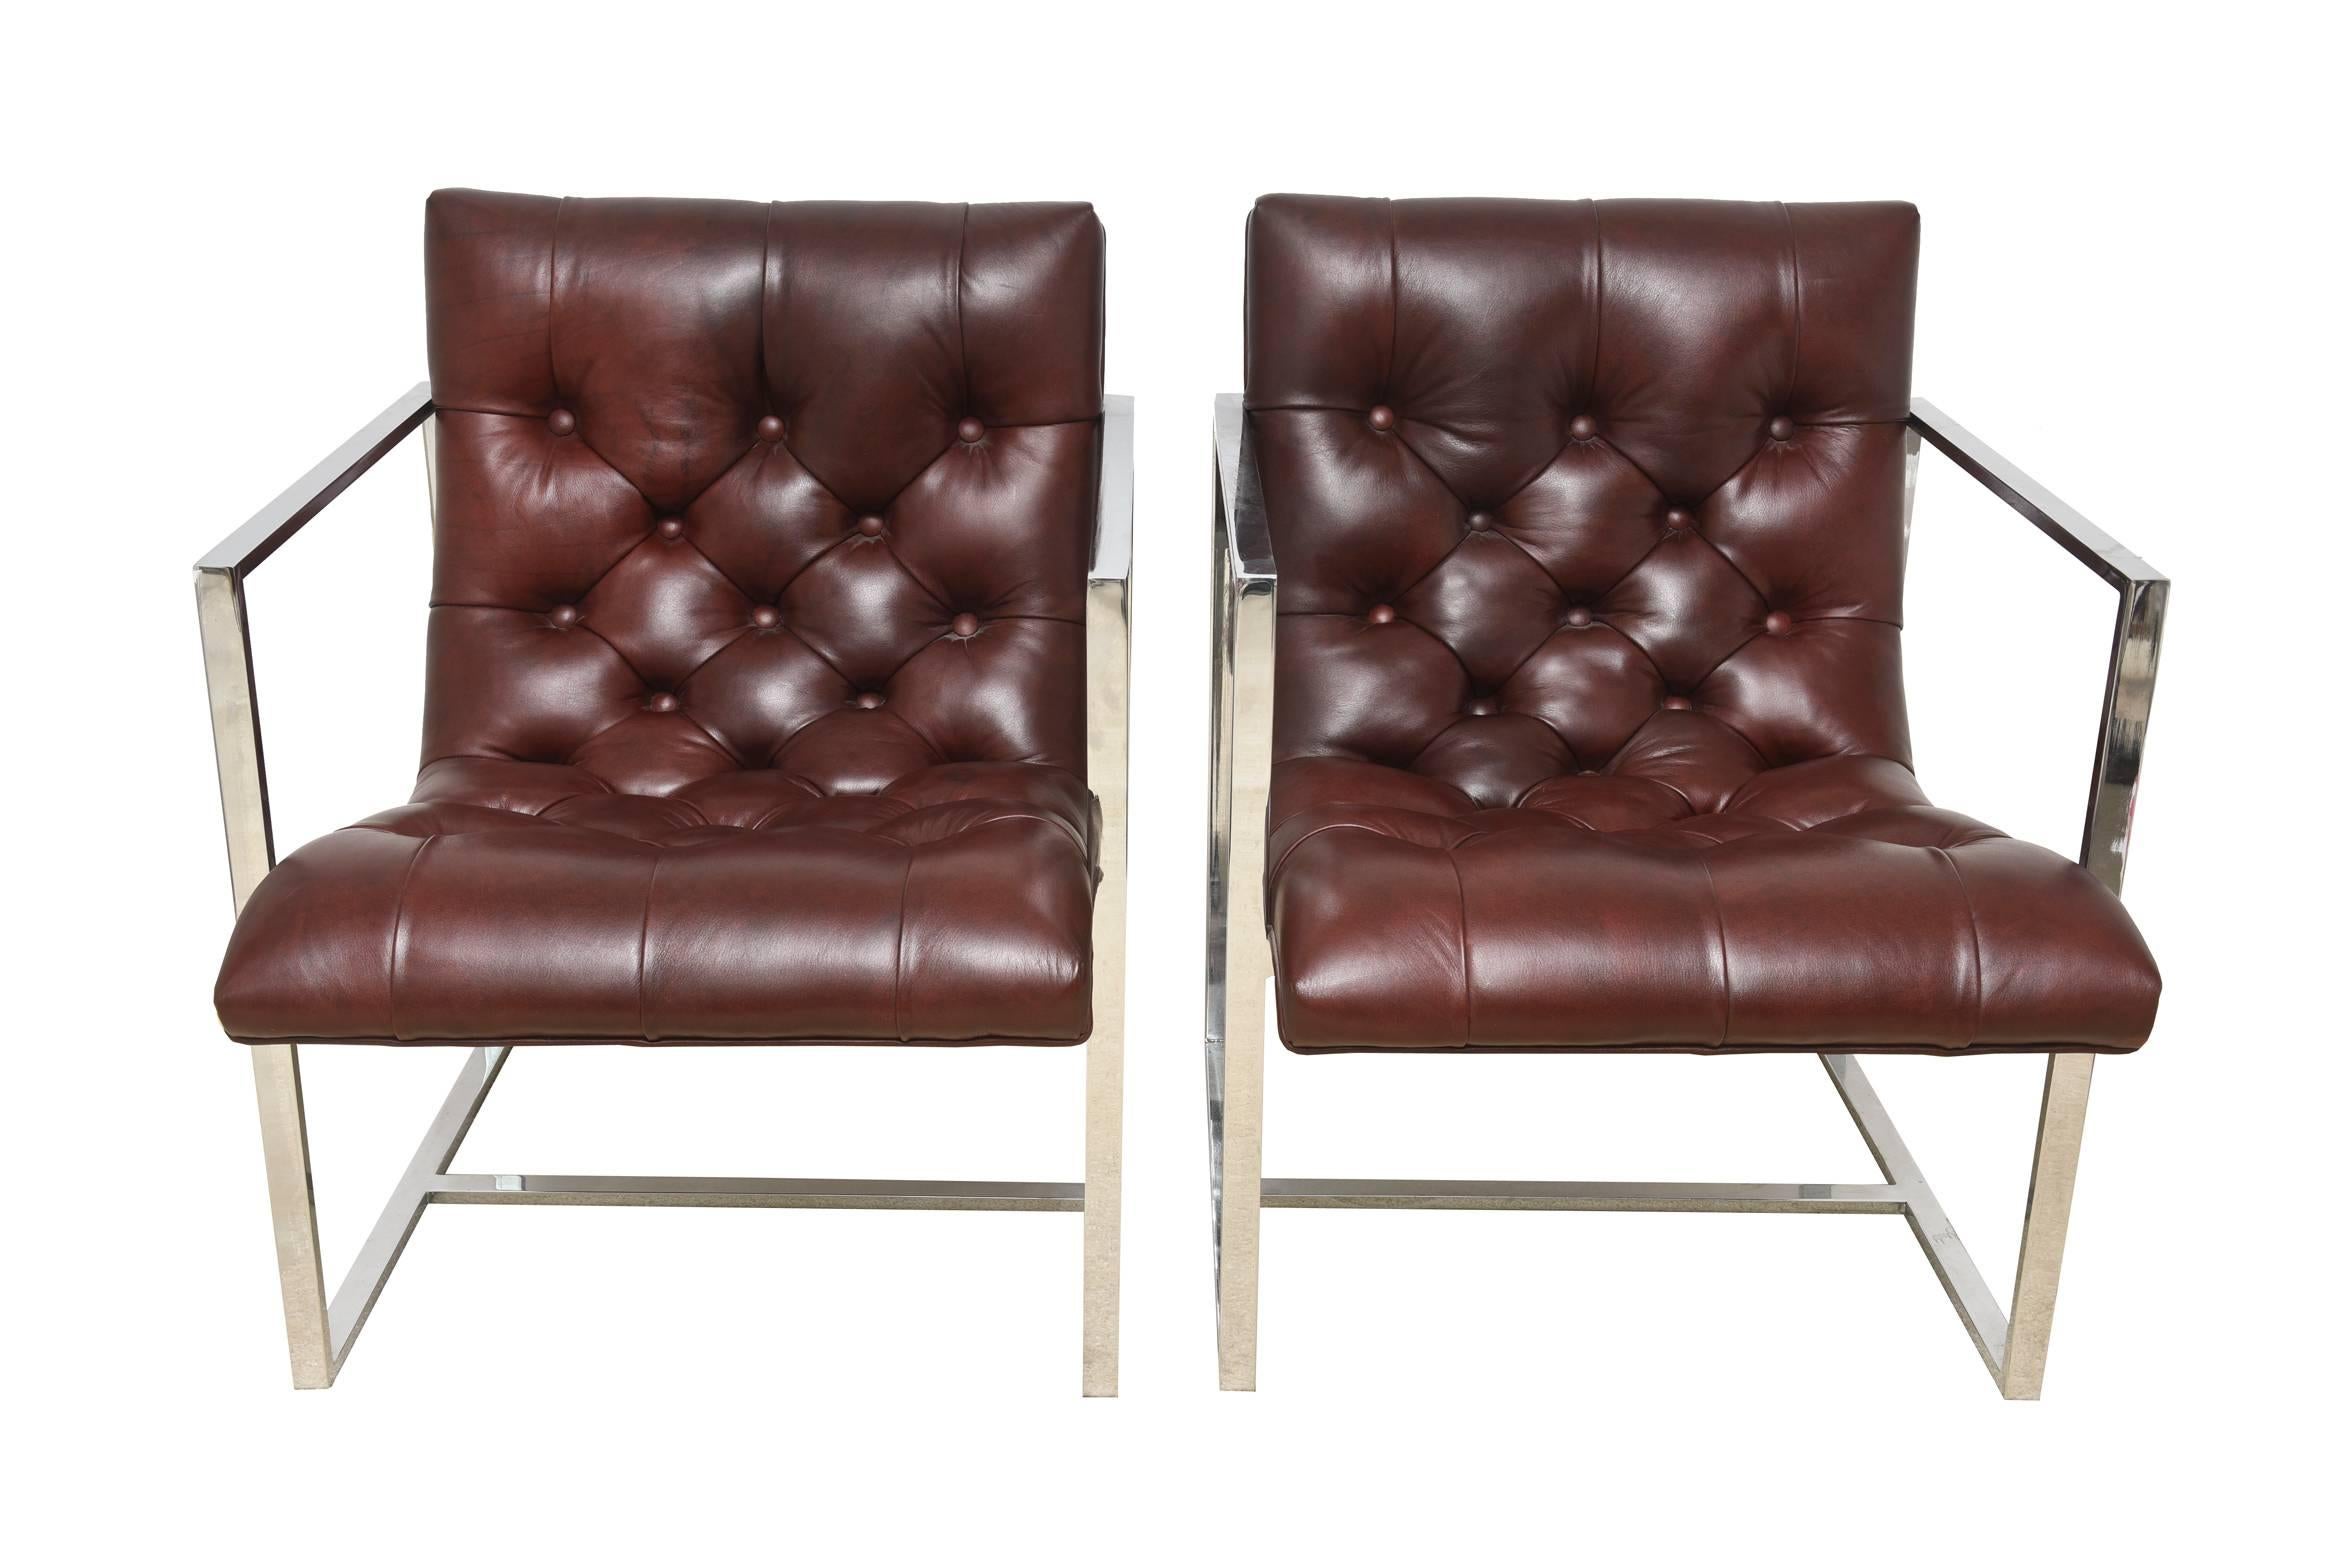 Diese herrlichen Paar Vintage Milo Baughman zugeschrieben architektonischen Seite Stühle oder Lounge-Stühle sind ein Chromrahmen mit feinem Leder getuftet Sitze in einem bräunlichen Burgunder Farbe. Sie haben Knöpfe aus Leder als Teil der Tufting.